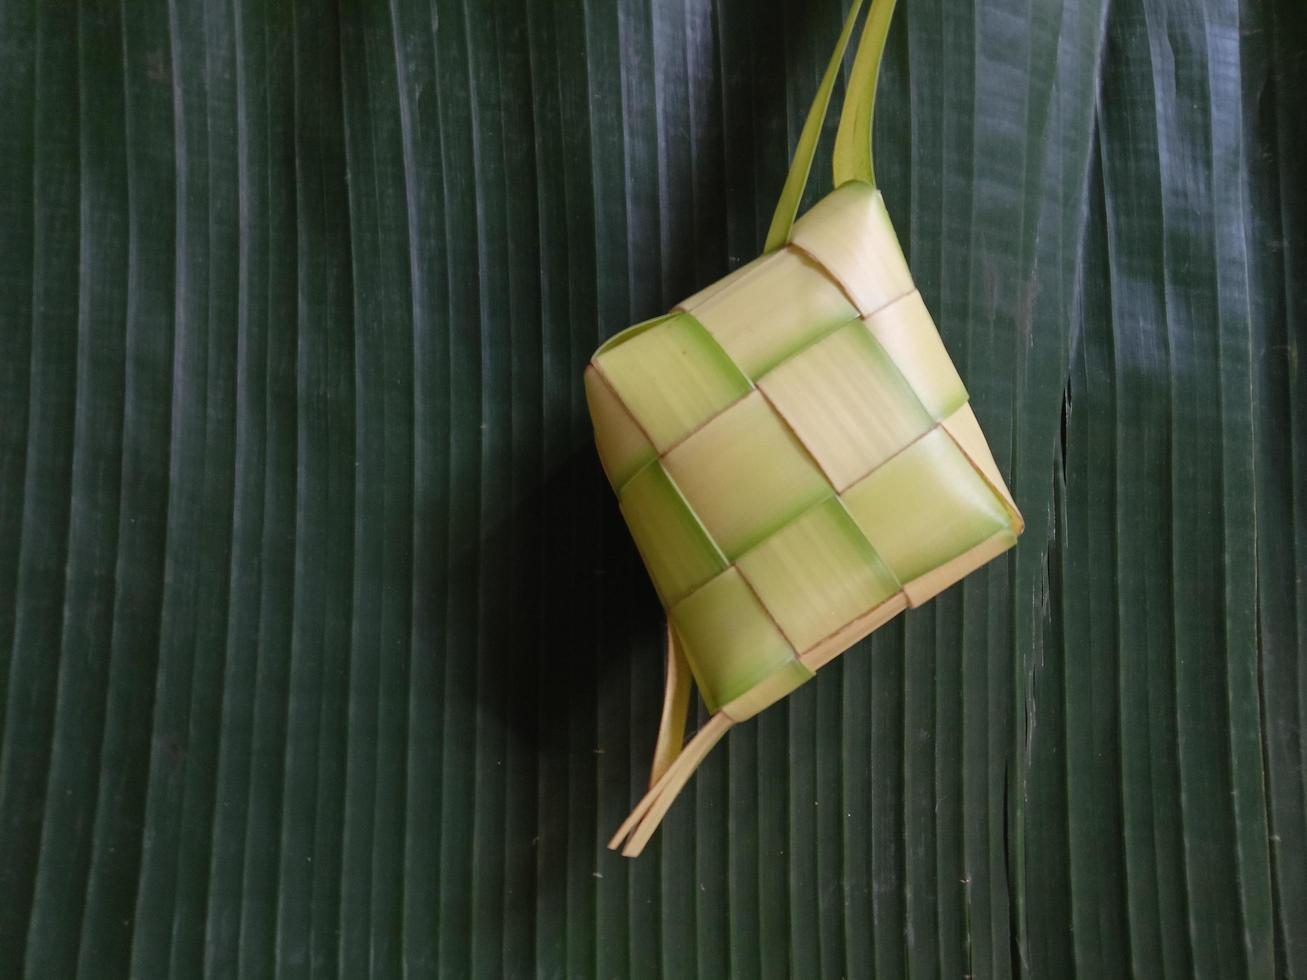 isolado. ketupat vazio não foi preenchido com arroz. na indonésia, muitas vezes aparece antes da celebração do eid al-fitr após o ramadã. conceito de design, fundo verde escuro. foto